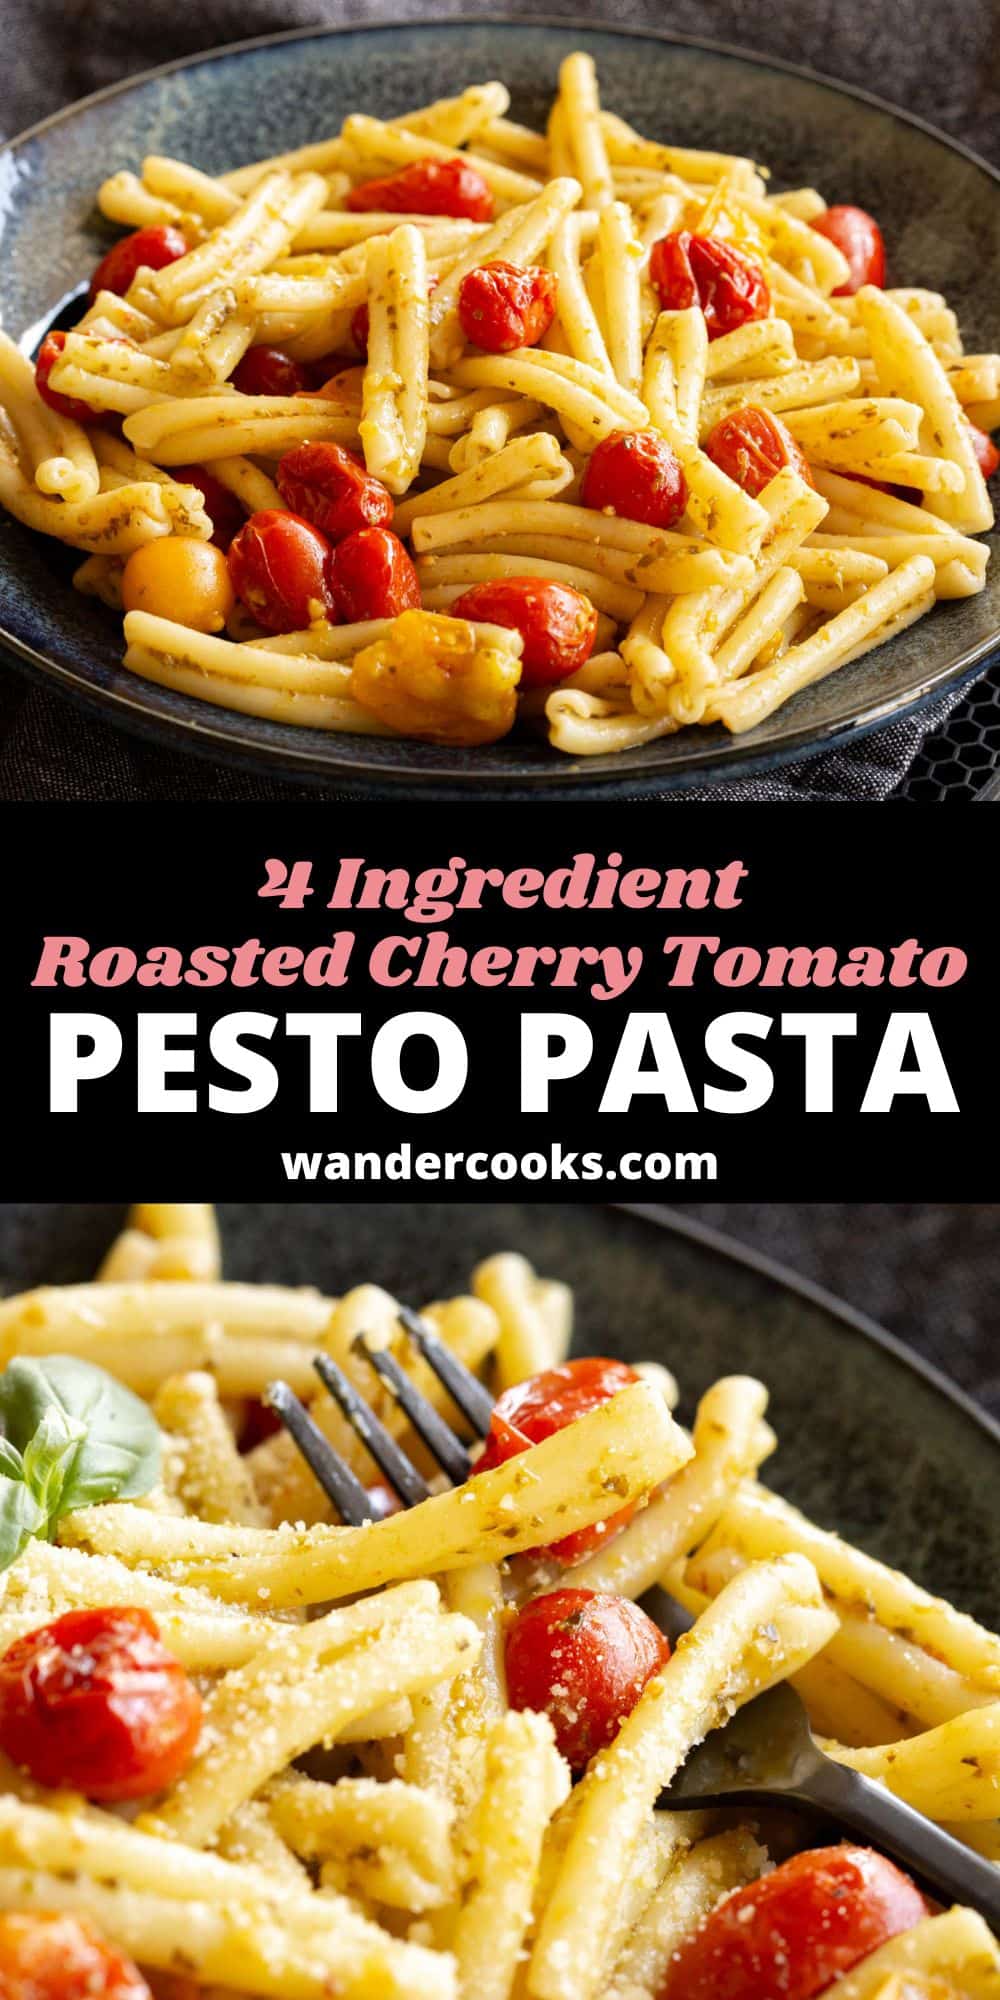 Roasted Cherry Tomato Pesto Pasta